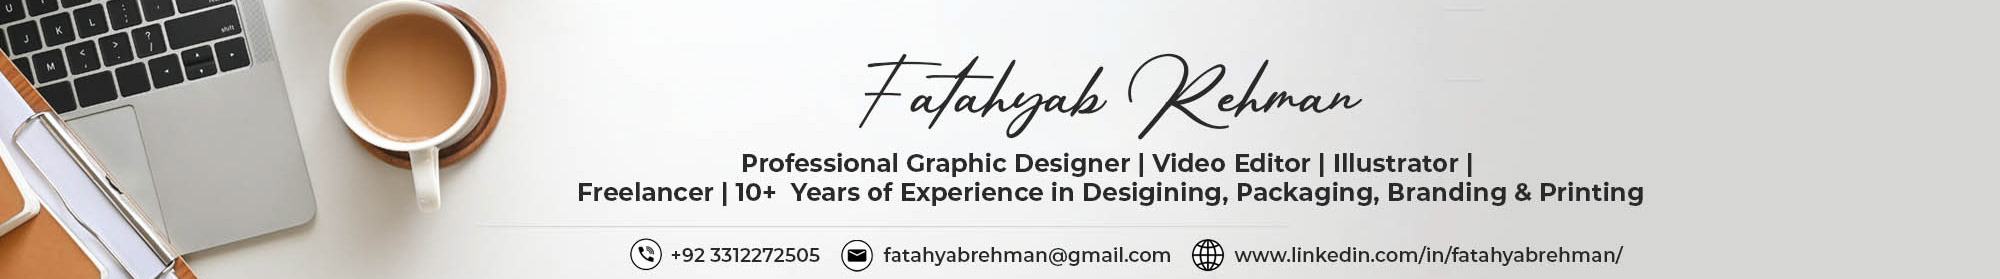 Profil-Banner von Fatahyab Rehman